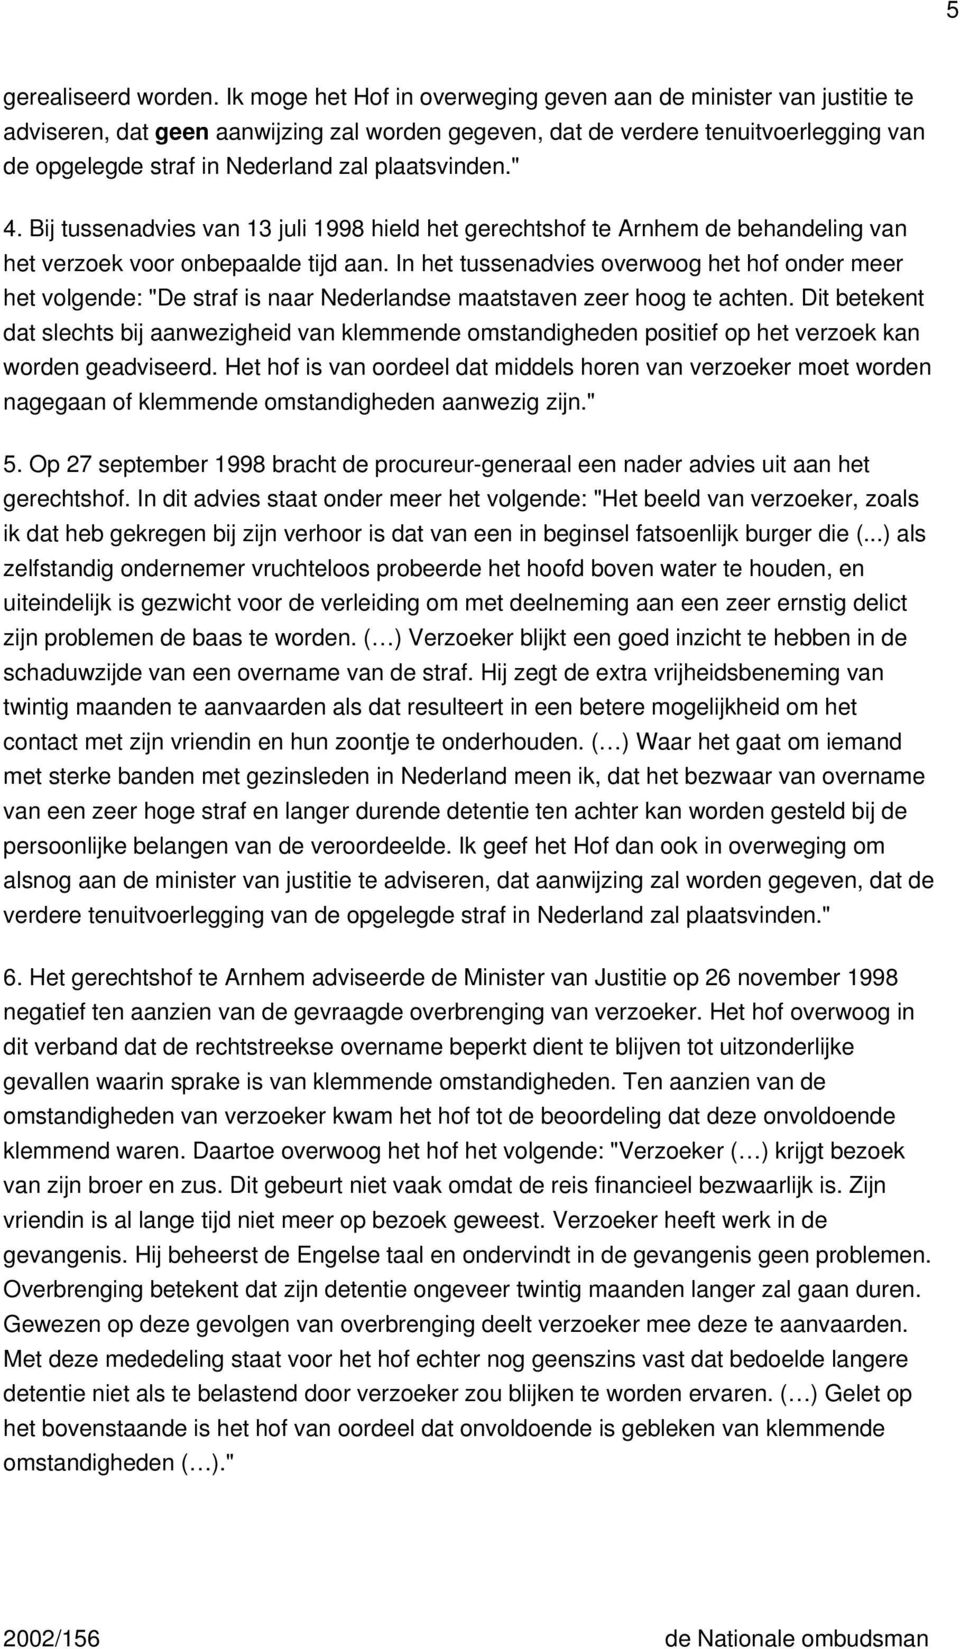 plaatsvinden." 4. Bij tussenadvies van 13 juli 1998 hield het gerechtshof te Arnhem de behandeling van het verzoek voor onbepaalde tijd aan.